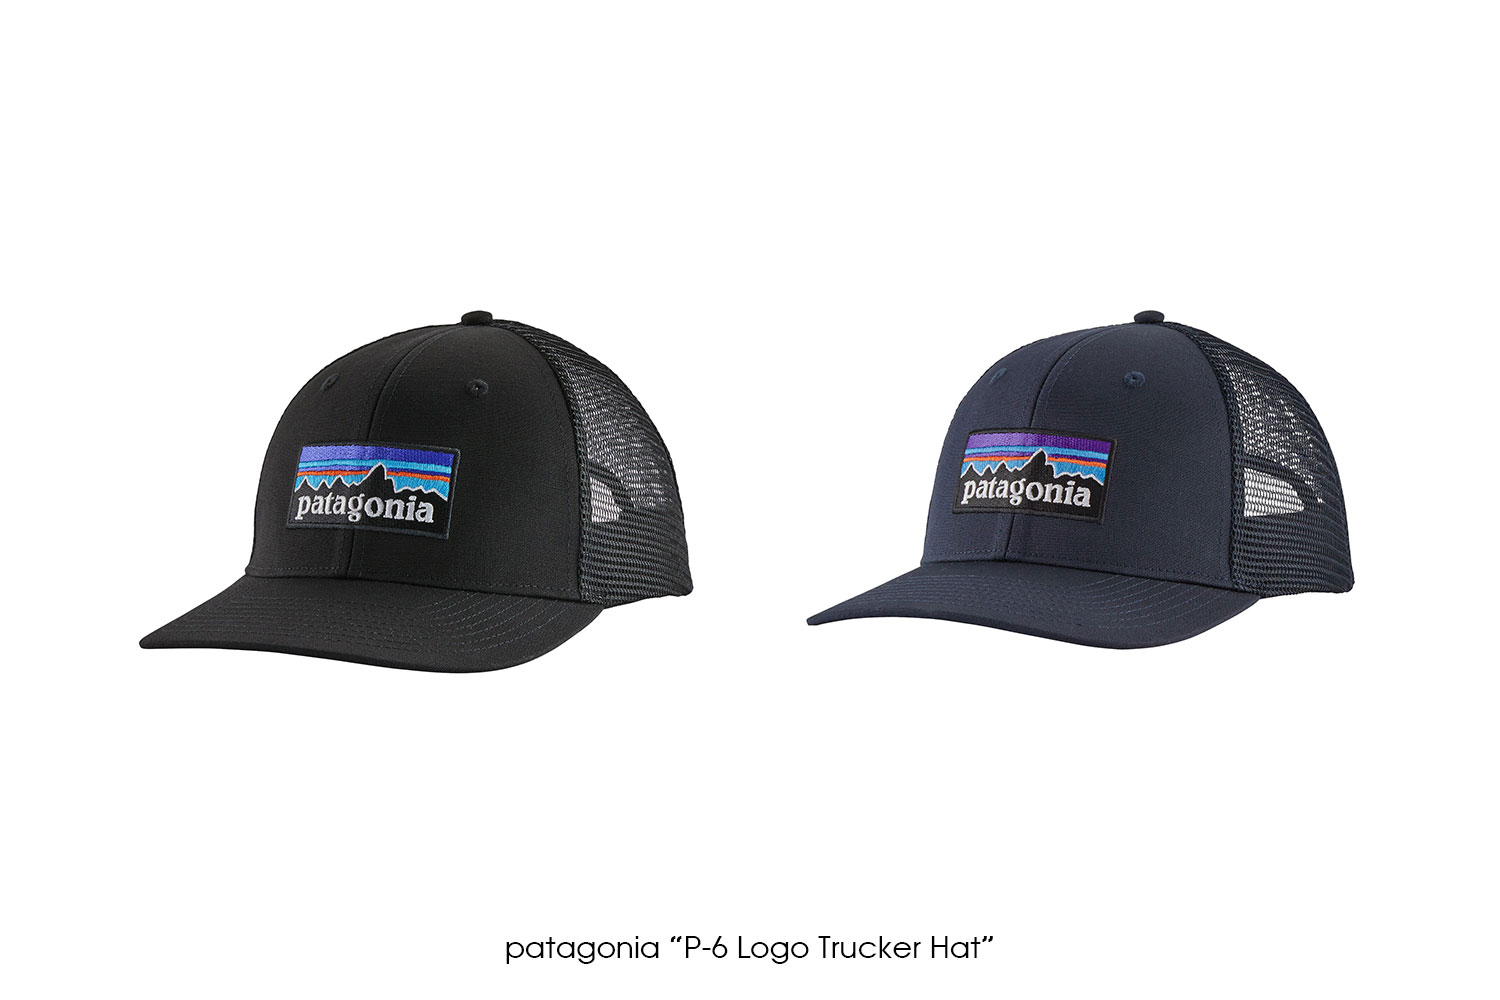 patagonia "P-6 Logo Trucker Hat"